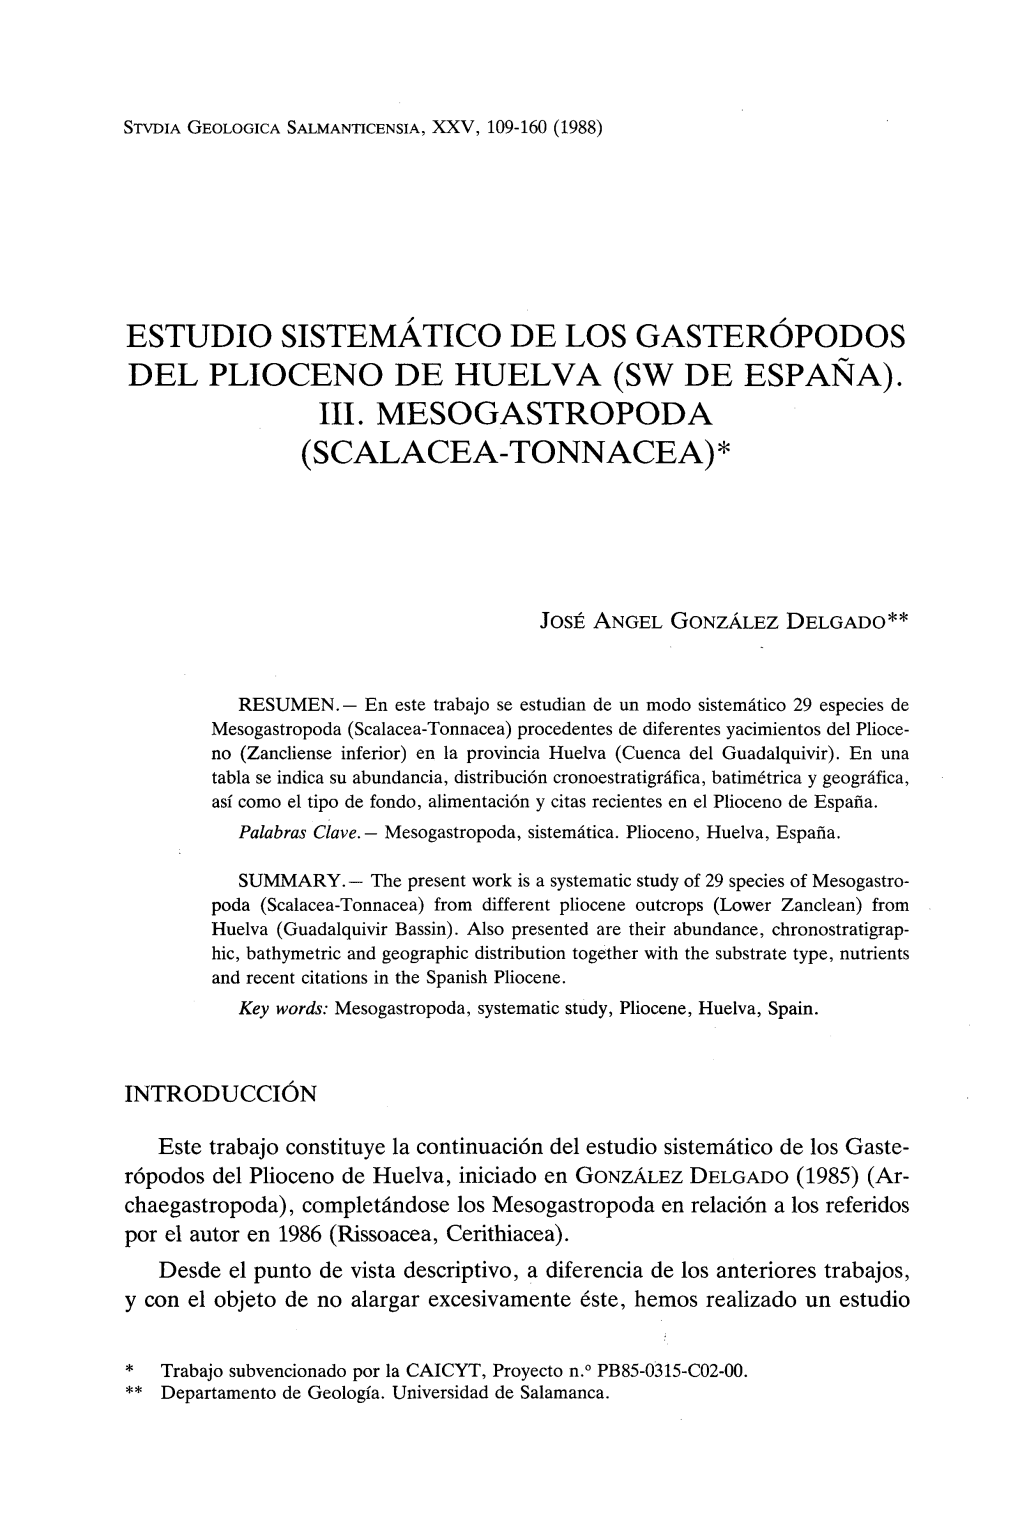 Estudio Sistemático De Los Gasterópodos Del Plioceno De Huelva (Sw De España)